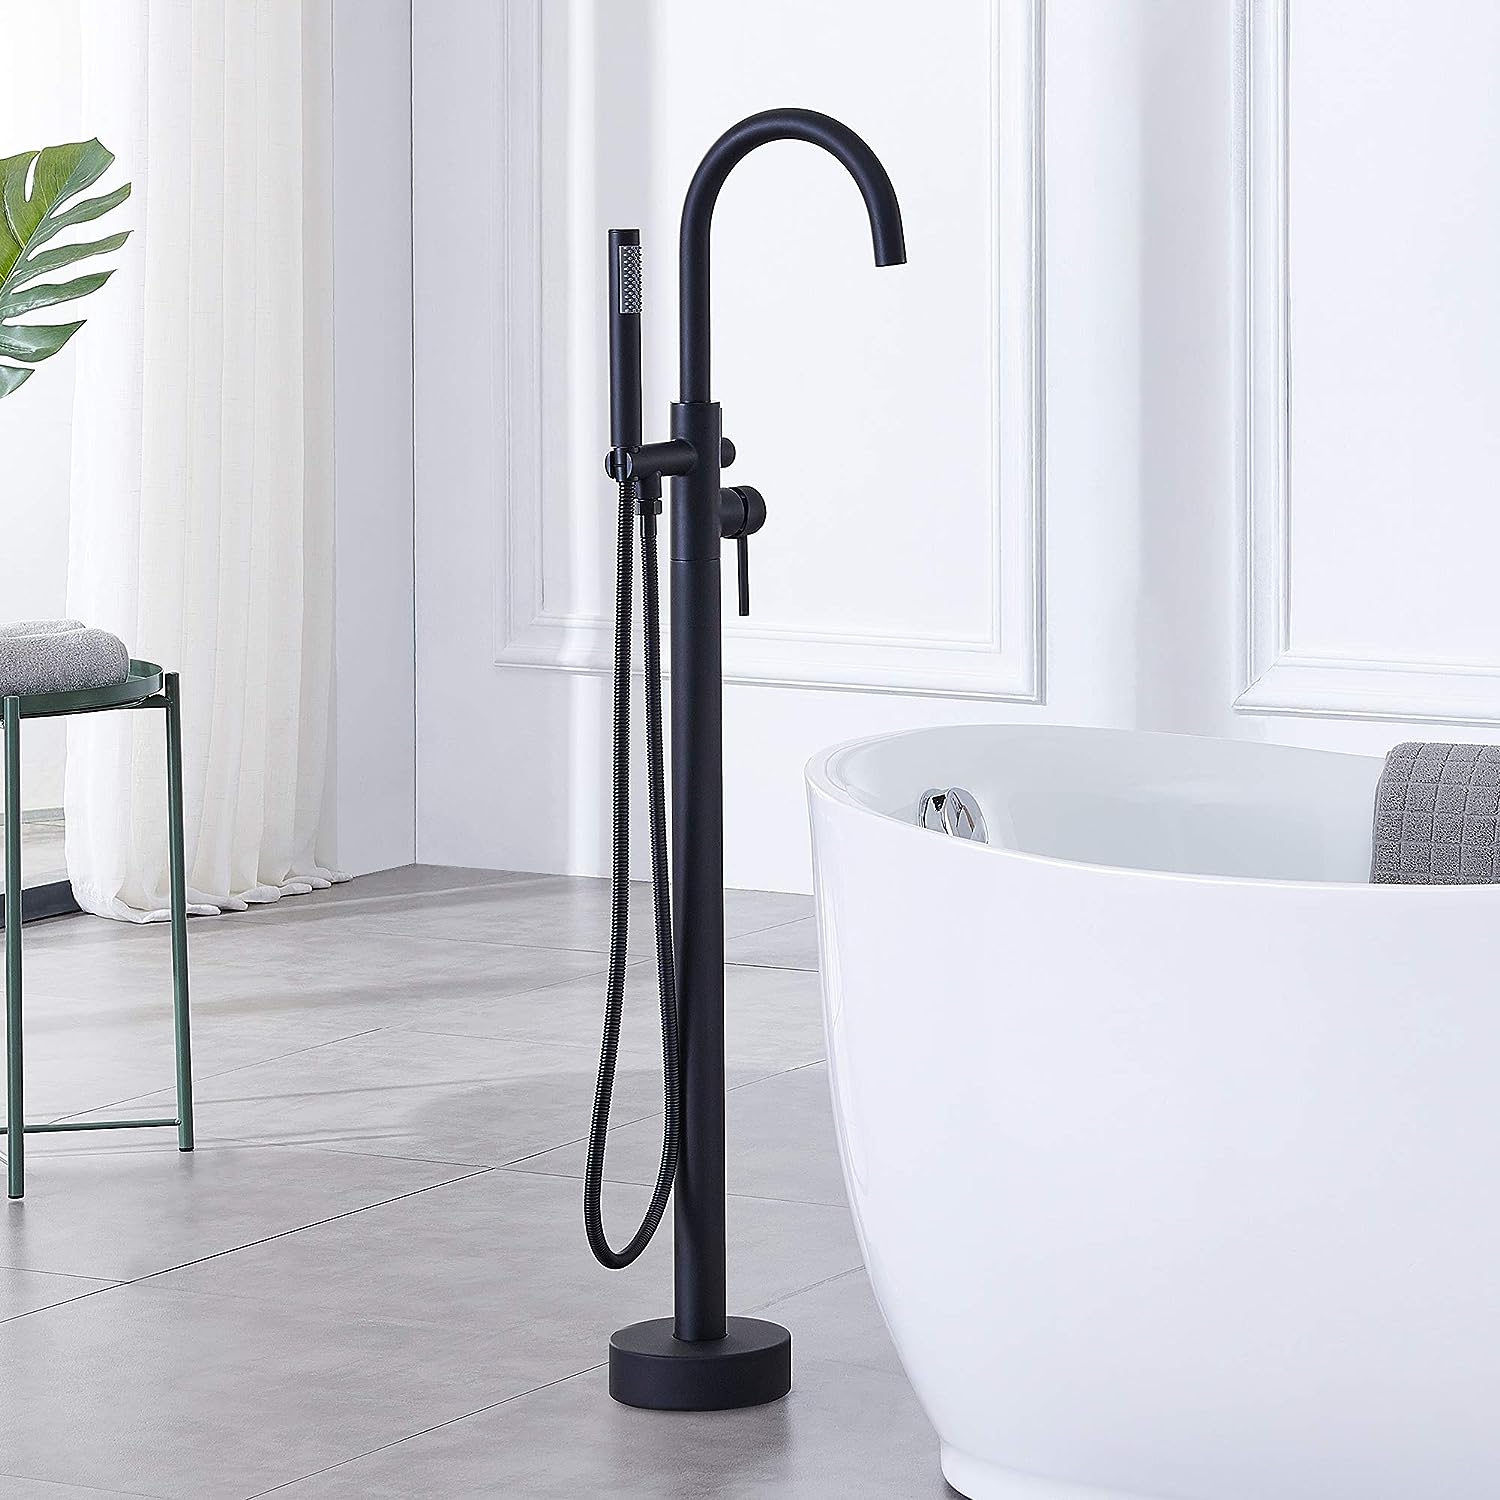 10 Best Bath Tub Faucet For 2023 1692755983 